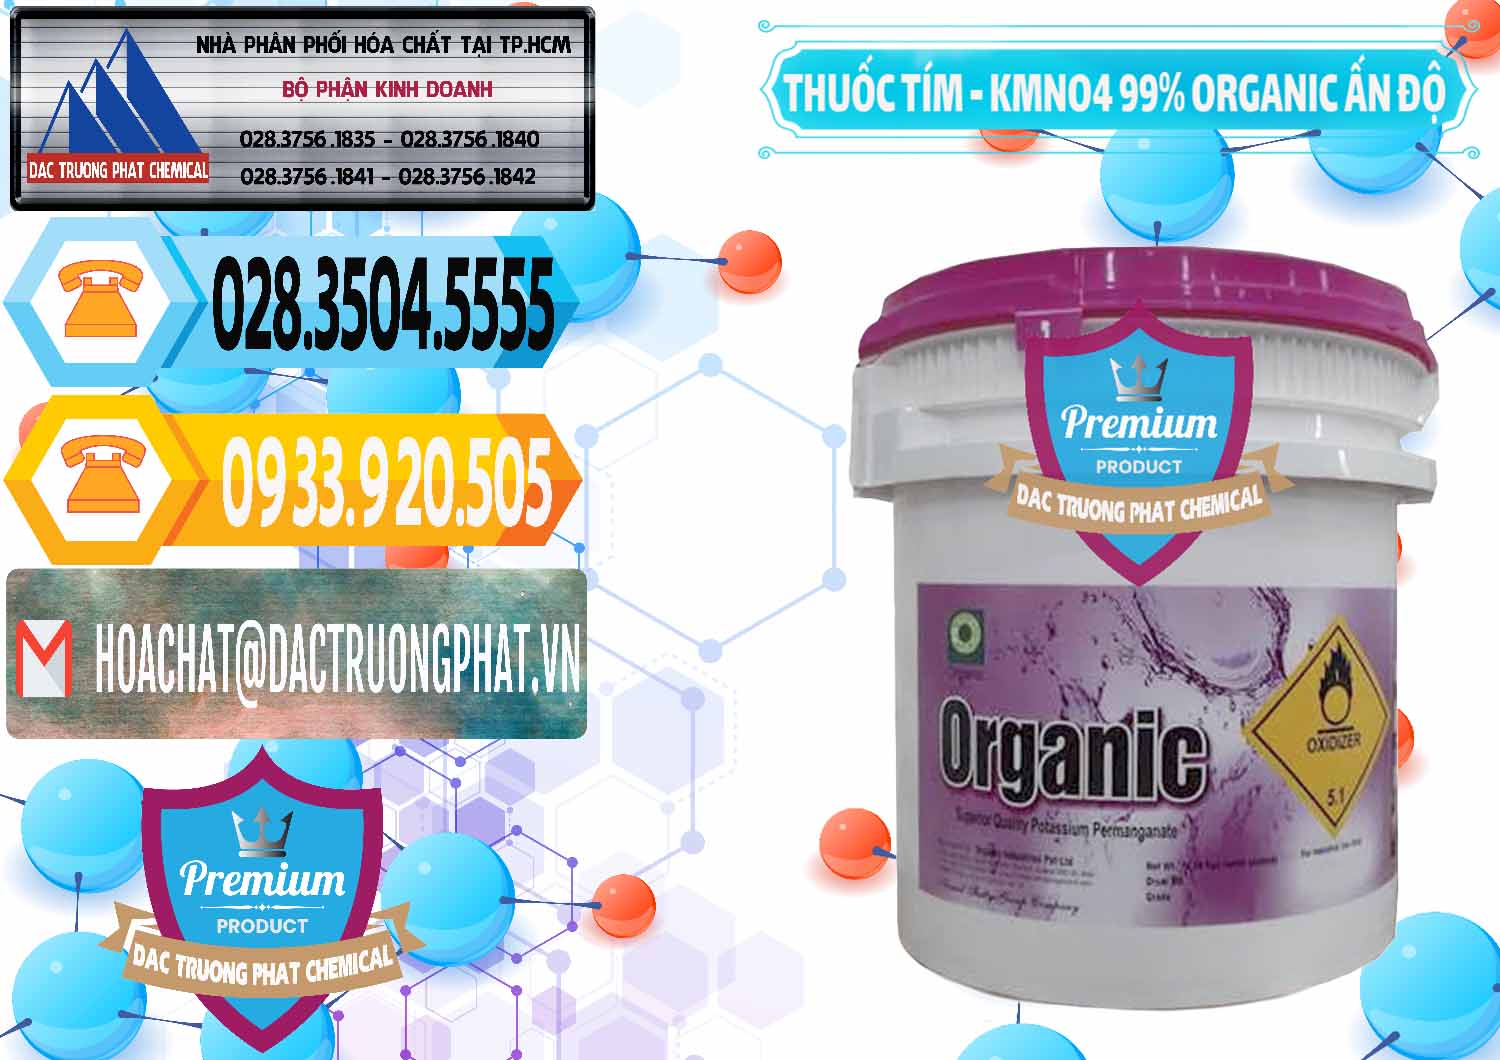 Công ty chuyên kinh doanh - bán Thuốc Tím - KMNO4 99% Organic Ấn Độ India - 0216 - Cty chuyên cung cấp ( bán ) hóa chất tại TP.HCM - hoachattayrua.net